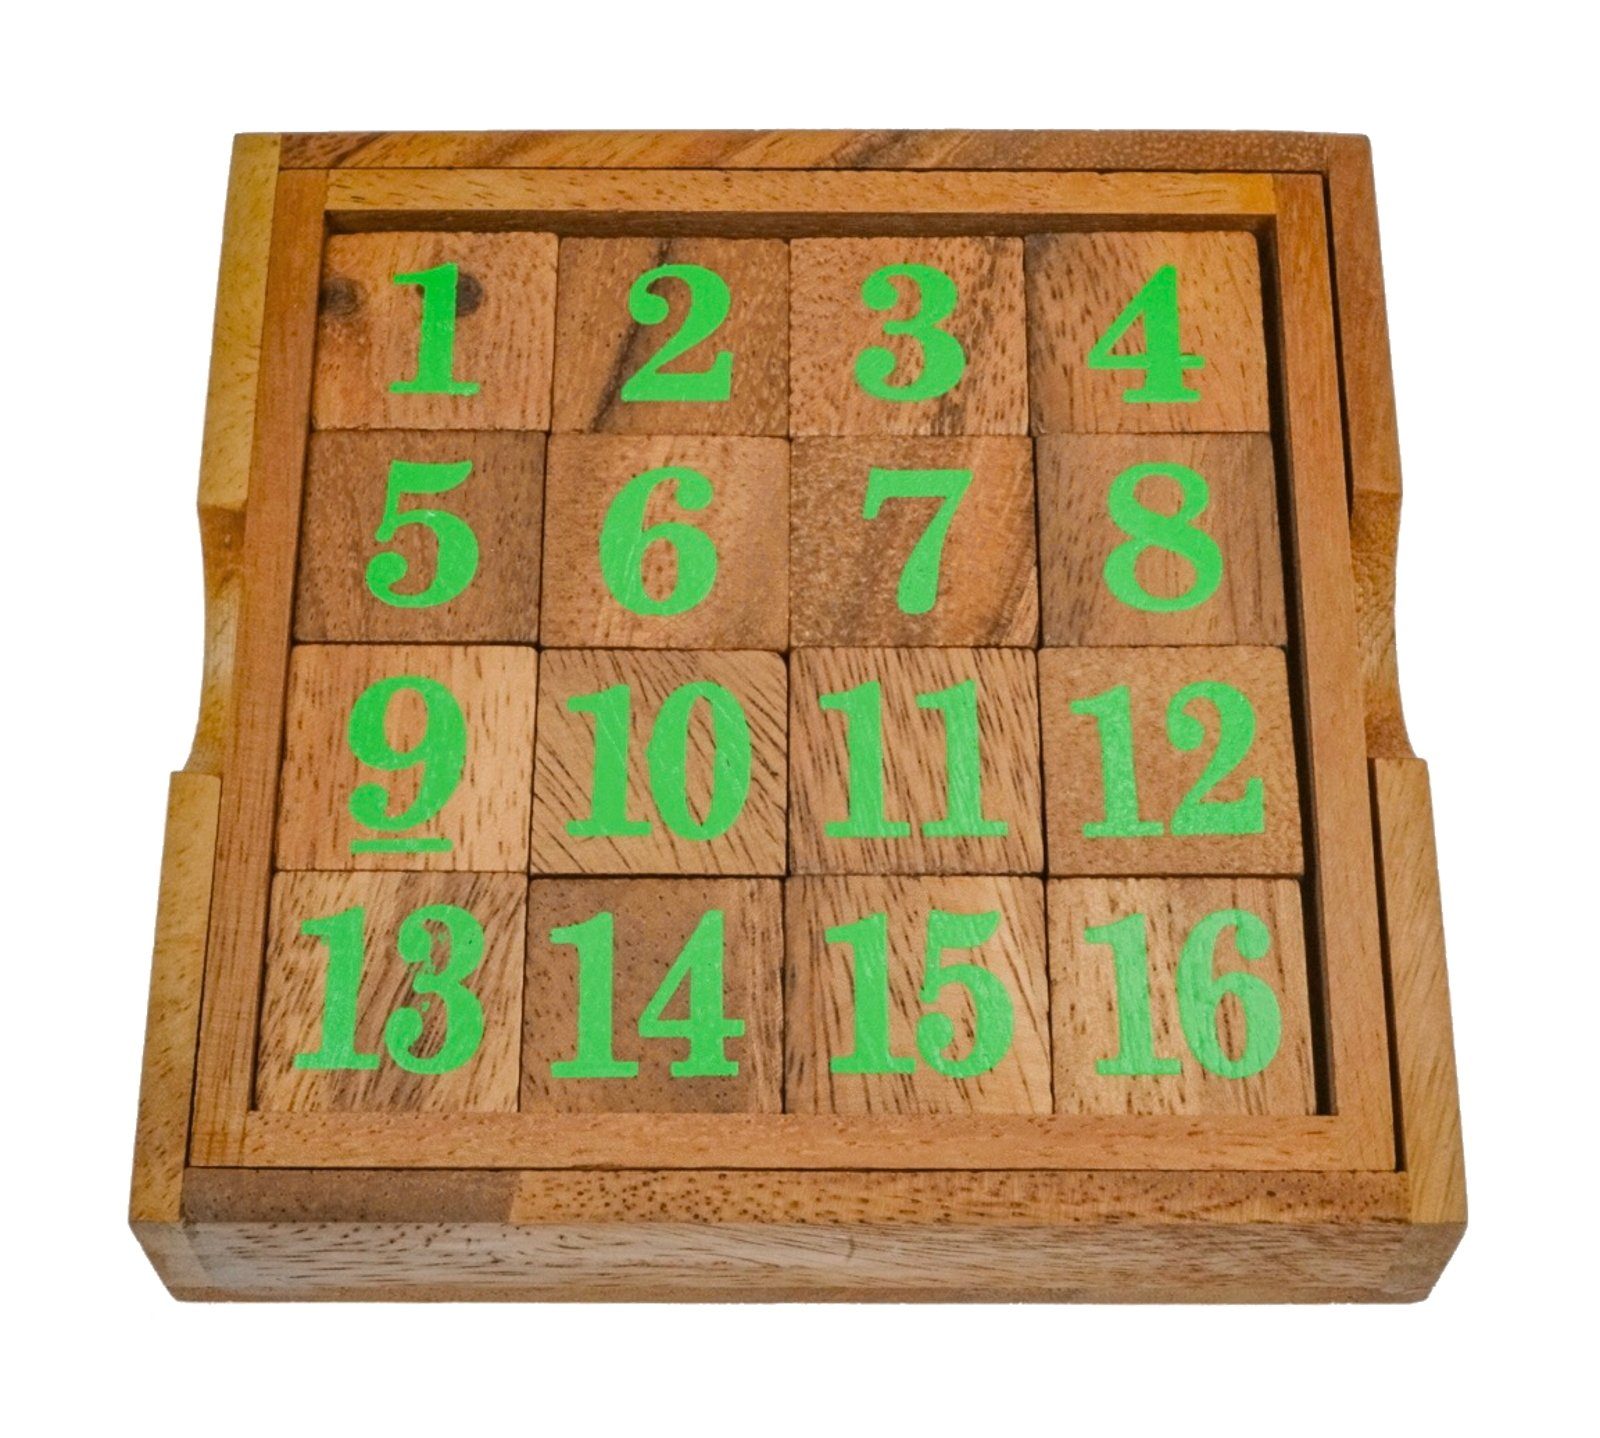 Logoplay Holzspiele Spiel, Slide 15 - grüne Zahlen - Schiebespiel - Rechenspiel - Knobelspiel aus HolzHolzspielzeug